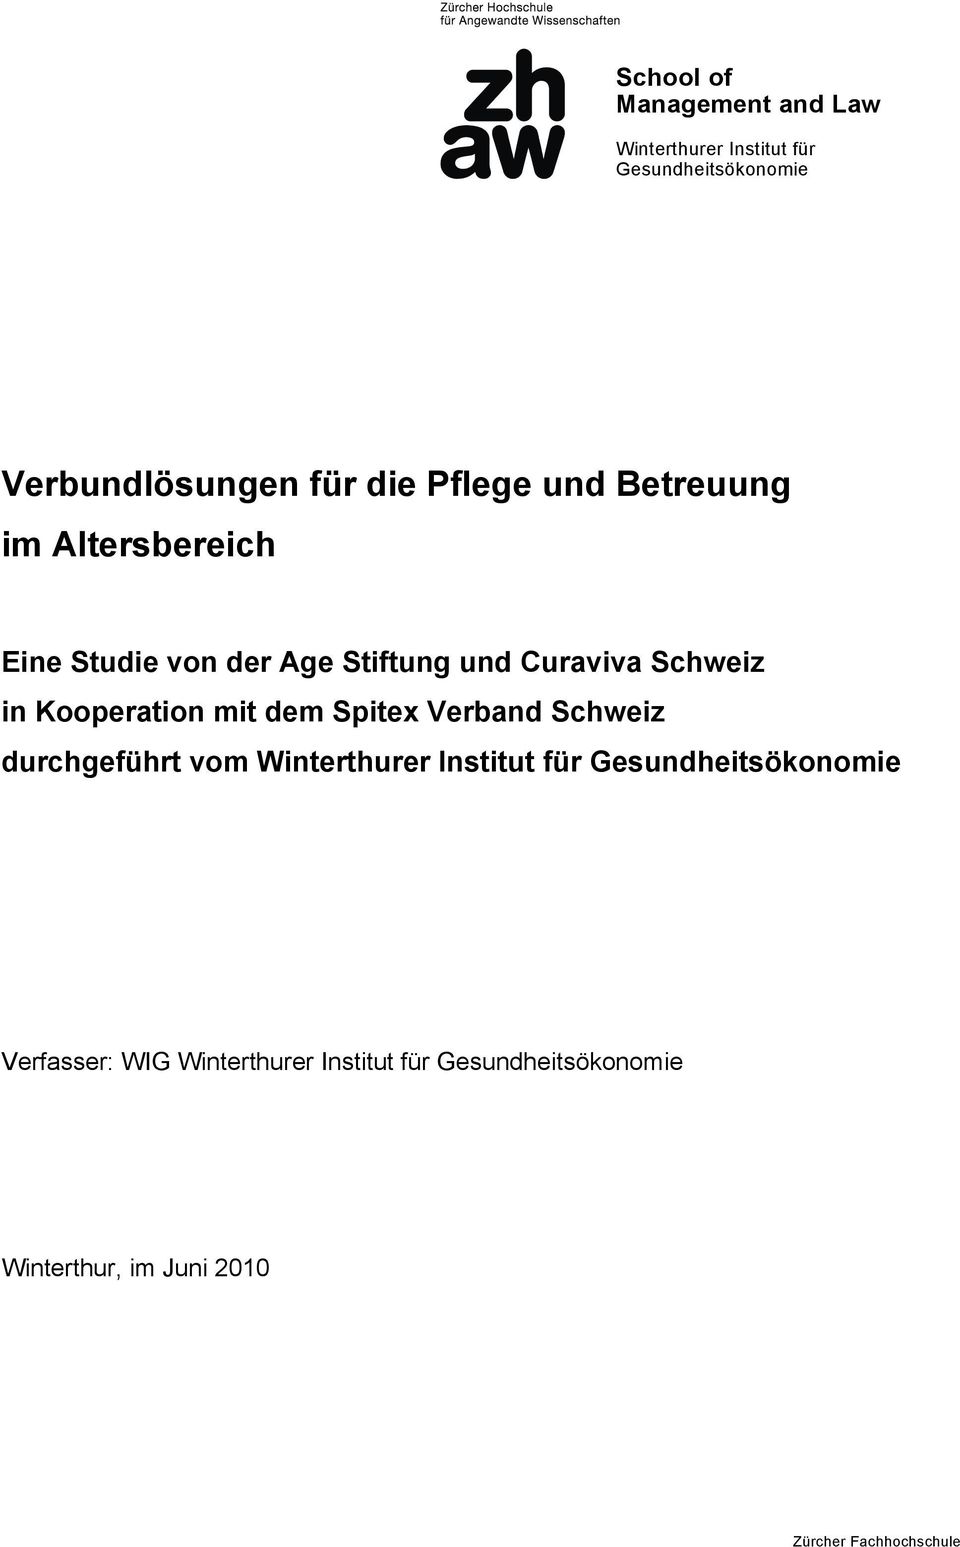 Kooperation mit dem Spitex Verband Schweiz durchgeführt vom Winterthurer Institut für